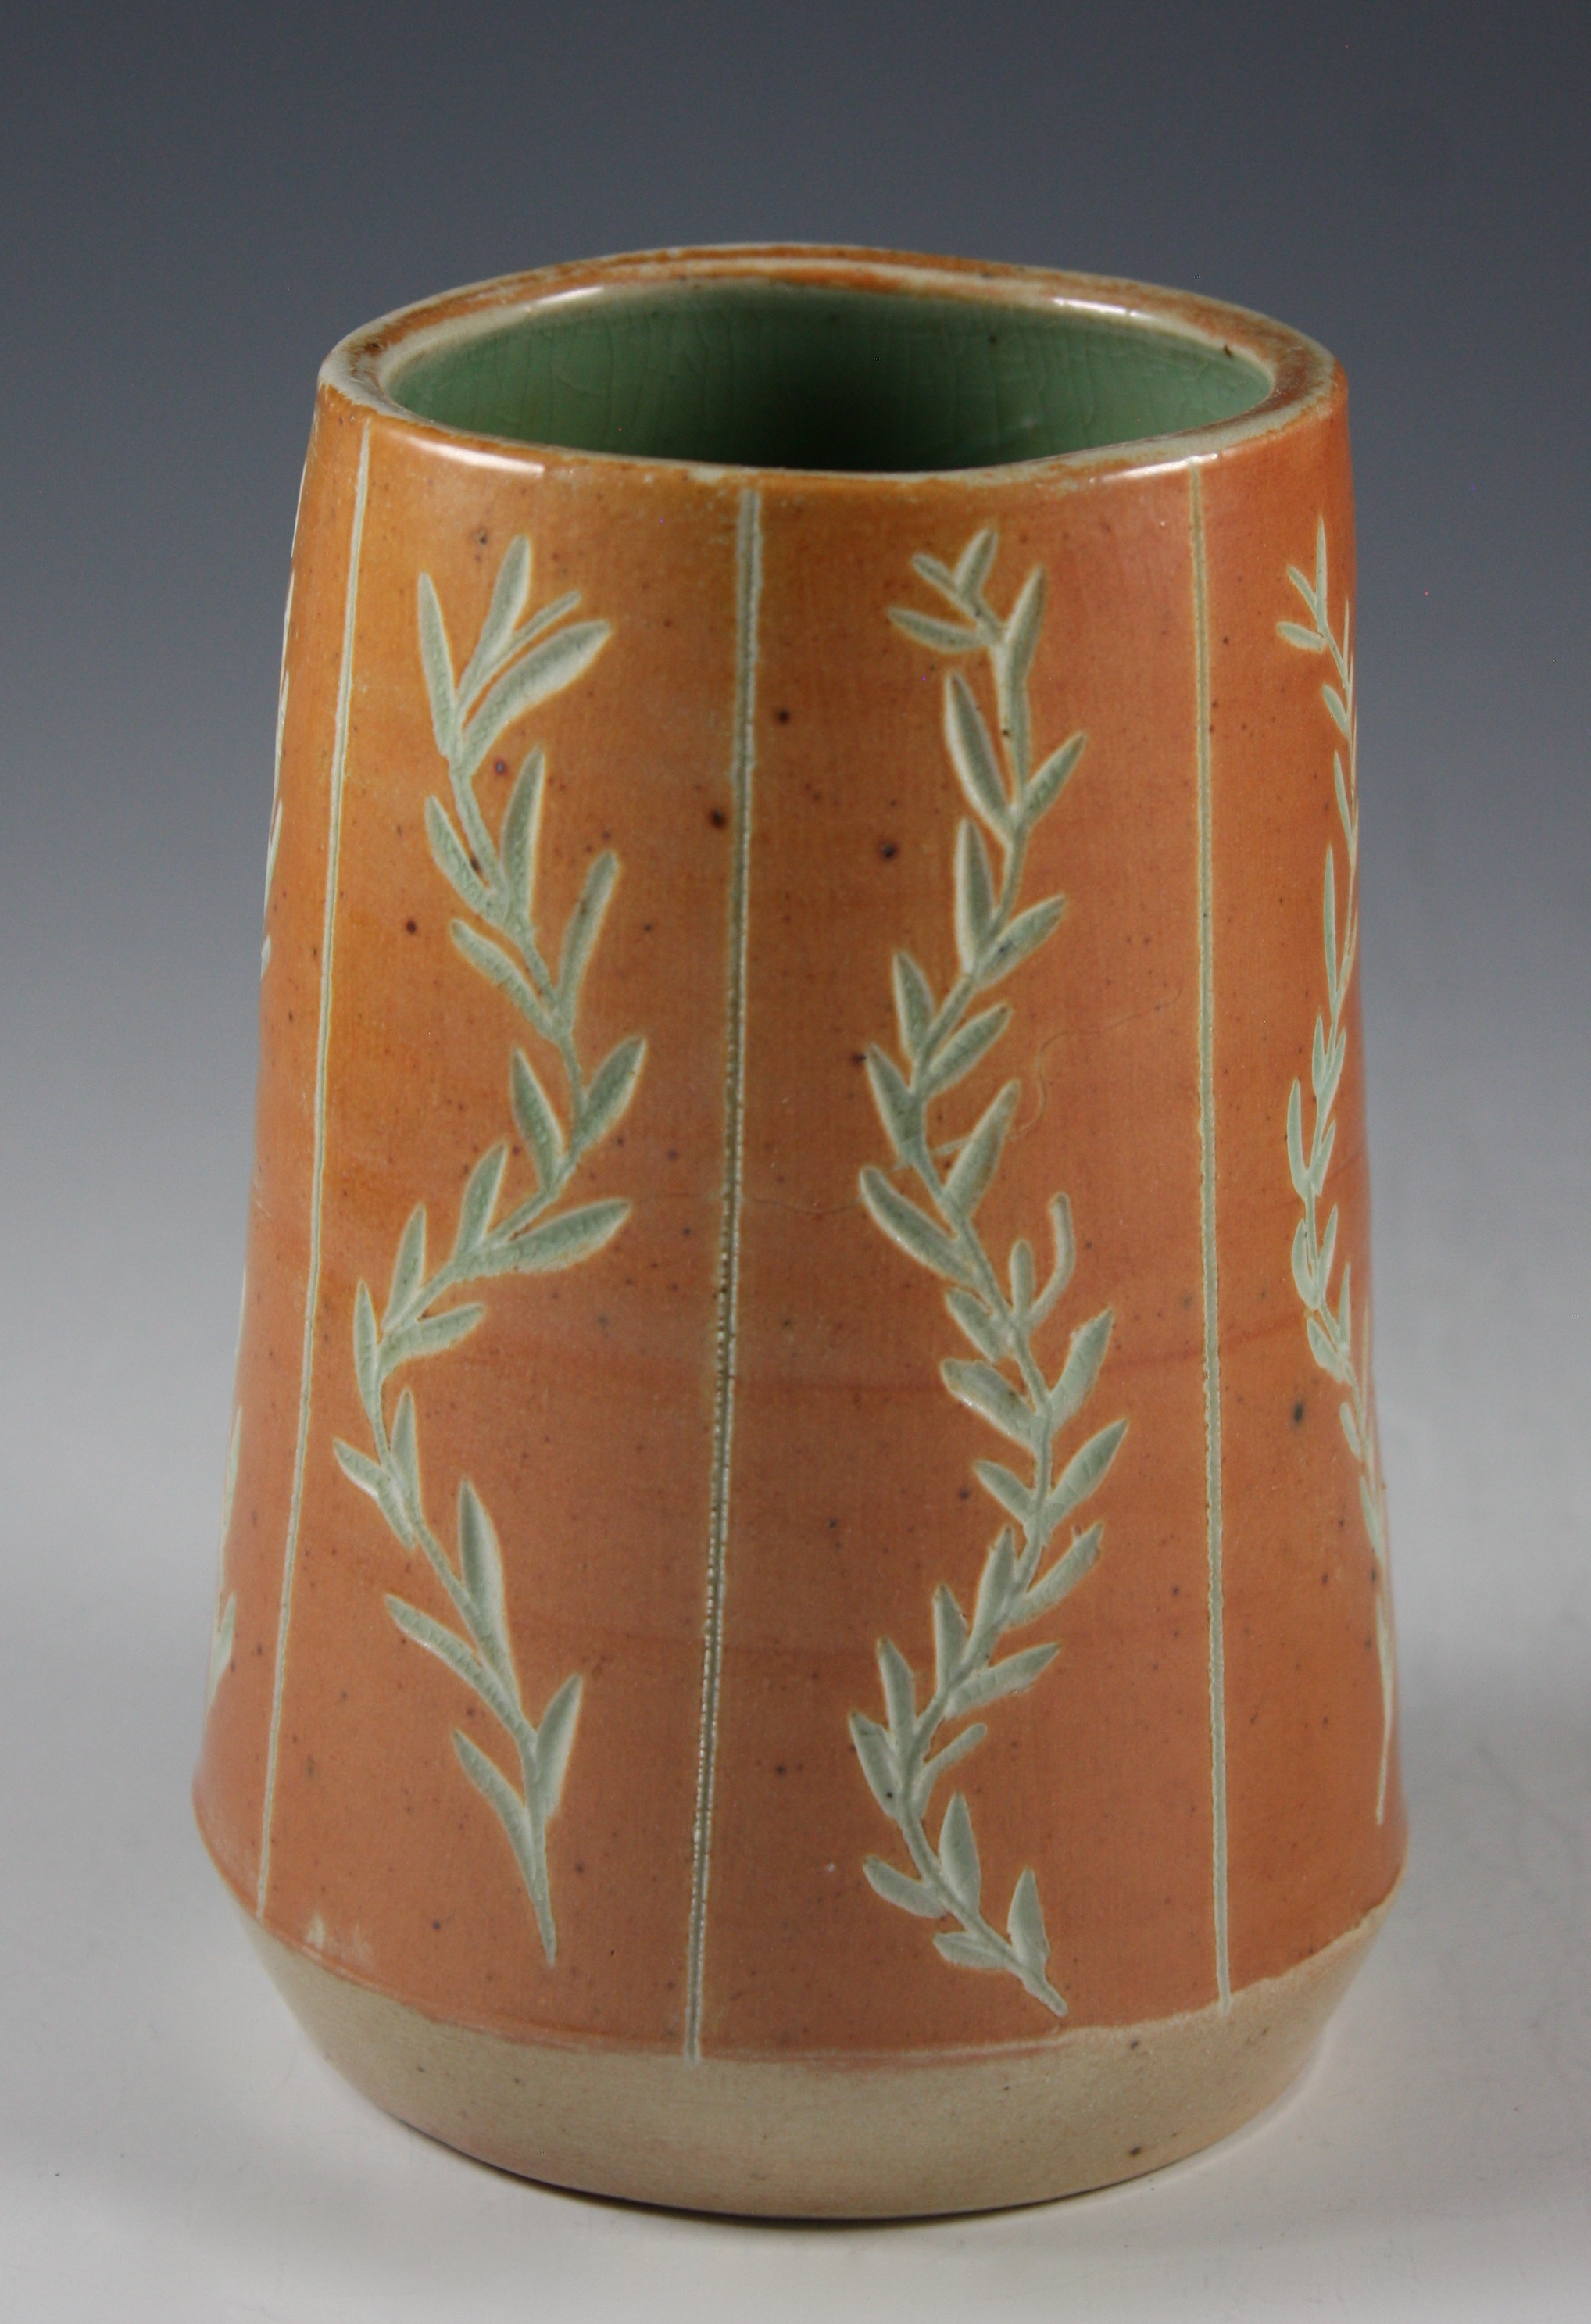 Small Vase with Carved Leaf Design